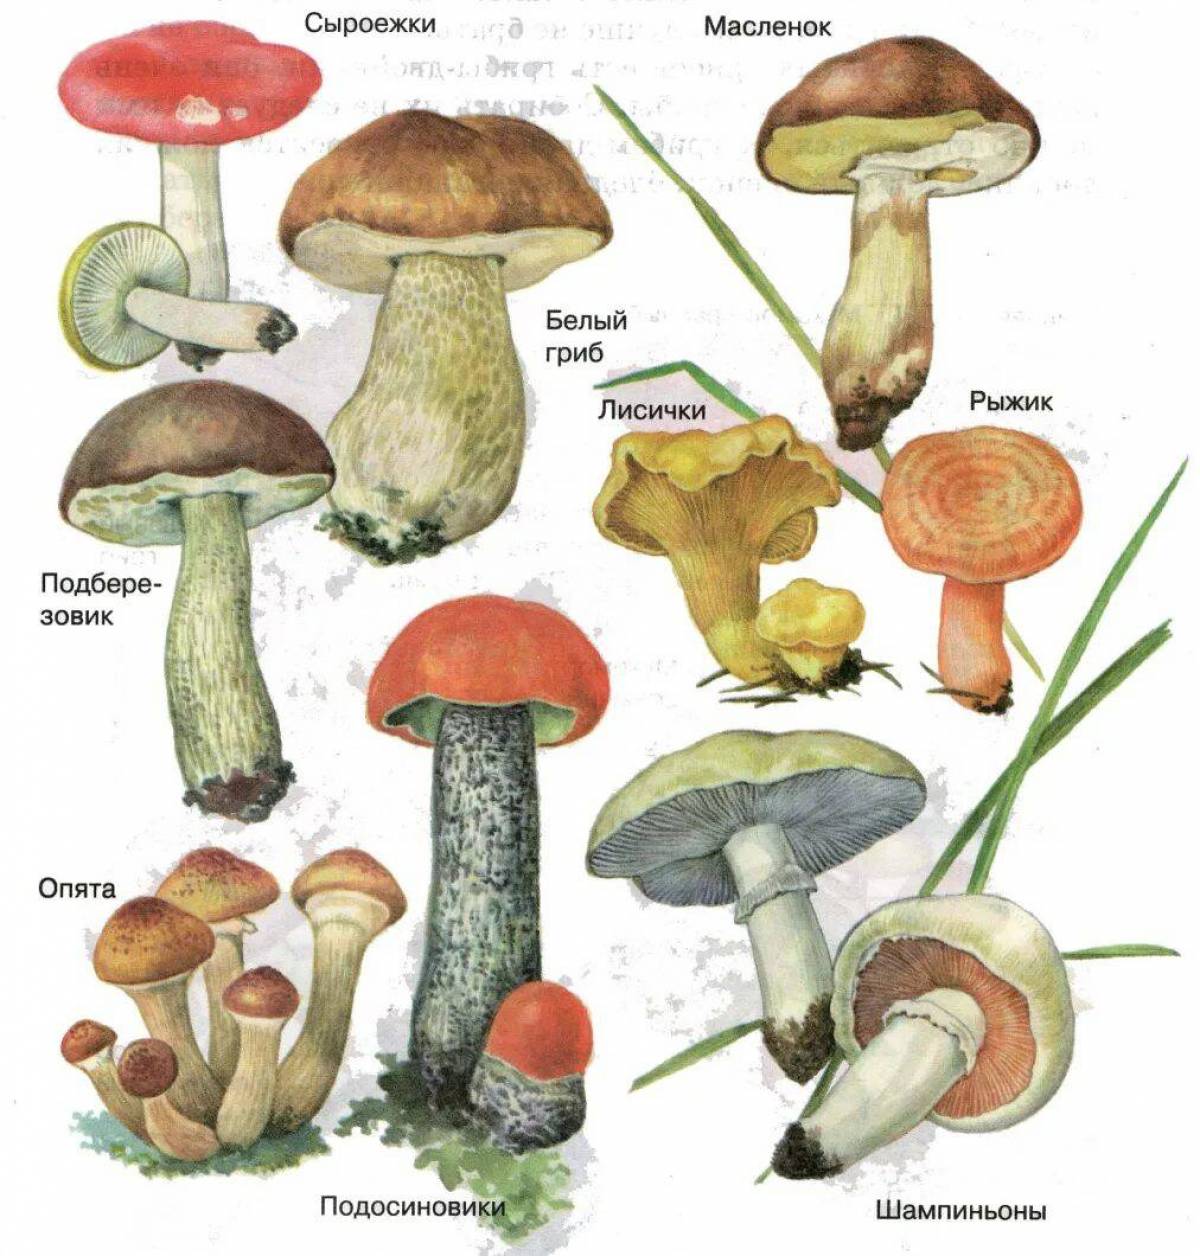 Грибы вы знаете какие съедобные. Название лесных съедобных грибов. Рисунки съедобных грибов с названиями. Сыроежка Боровик подосиновик масленок. Маслёнок, подосиновик, Боровик, сыроежка:.